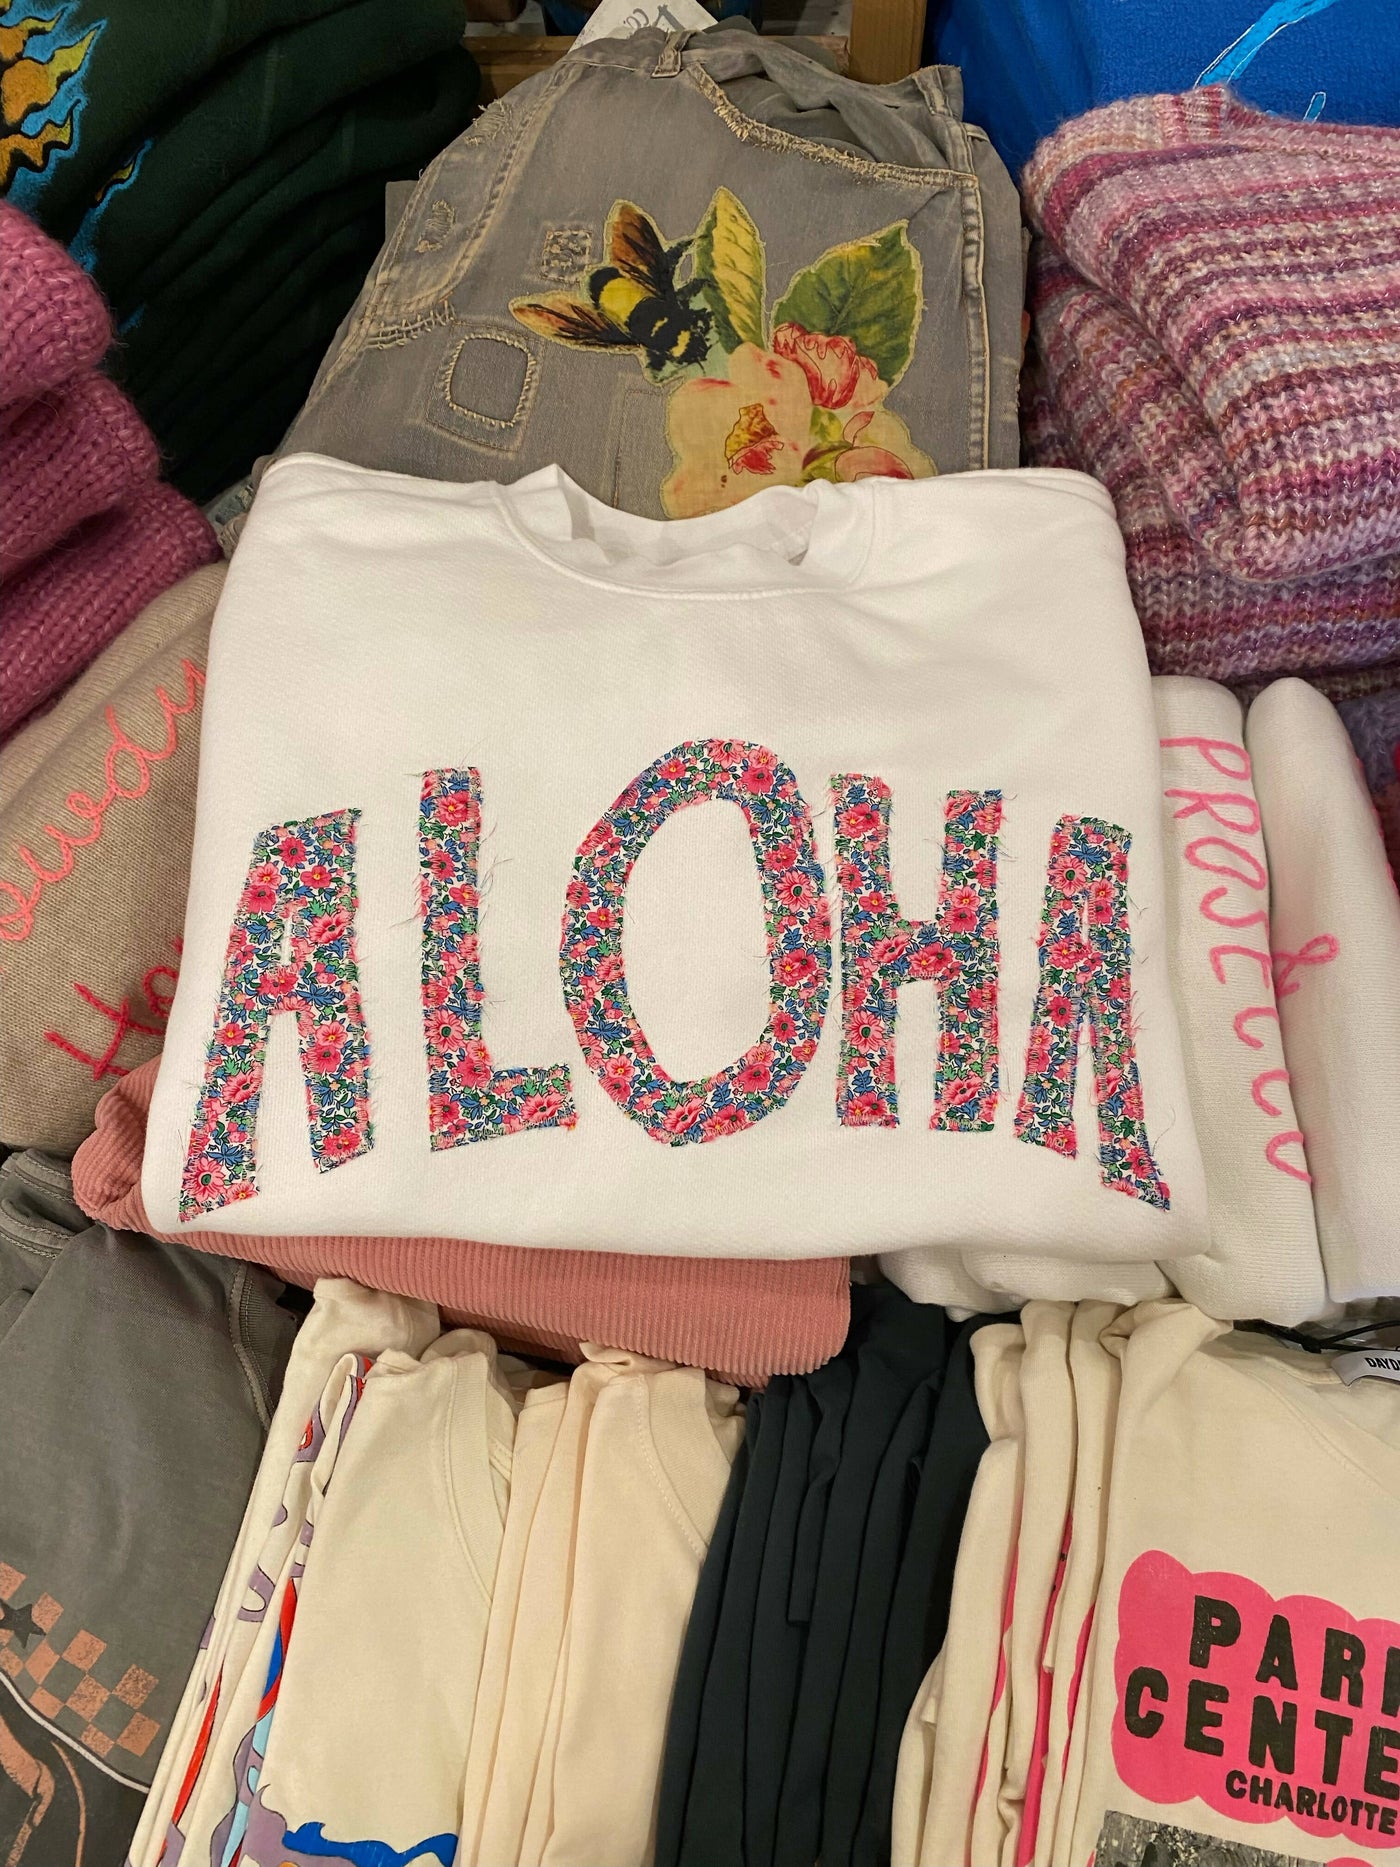 Aloha Sweatshirt